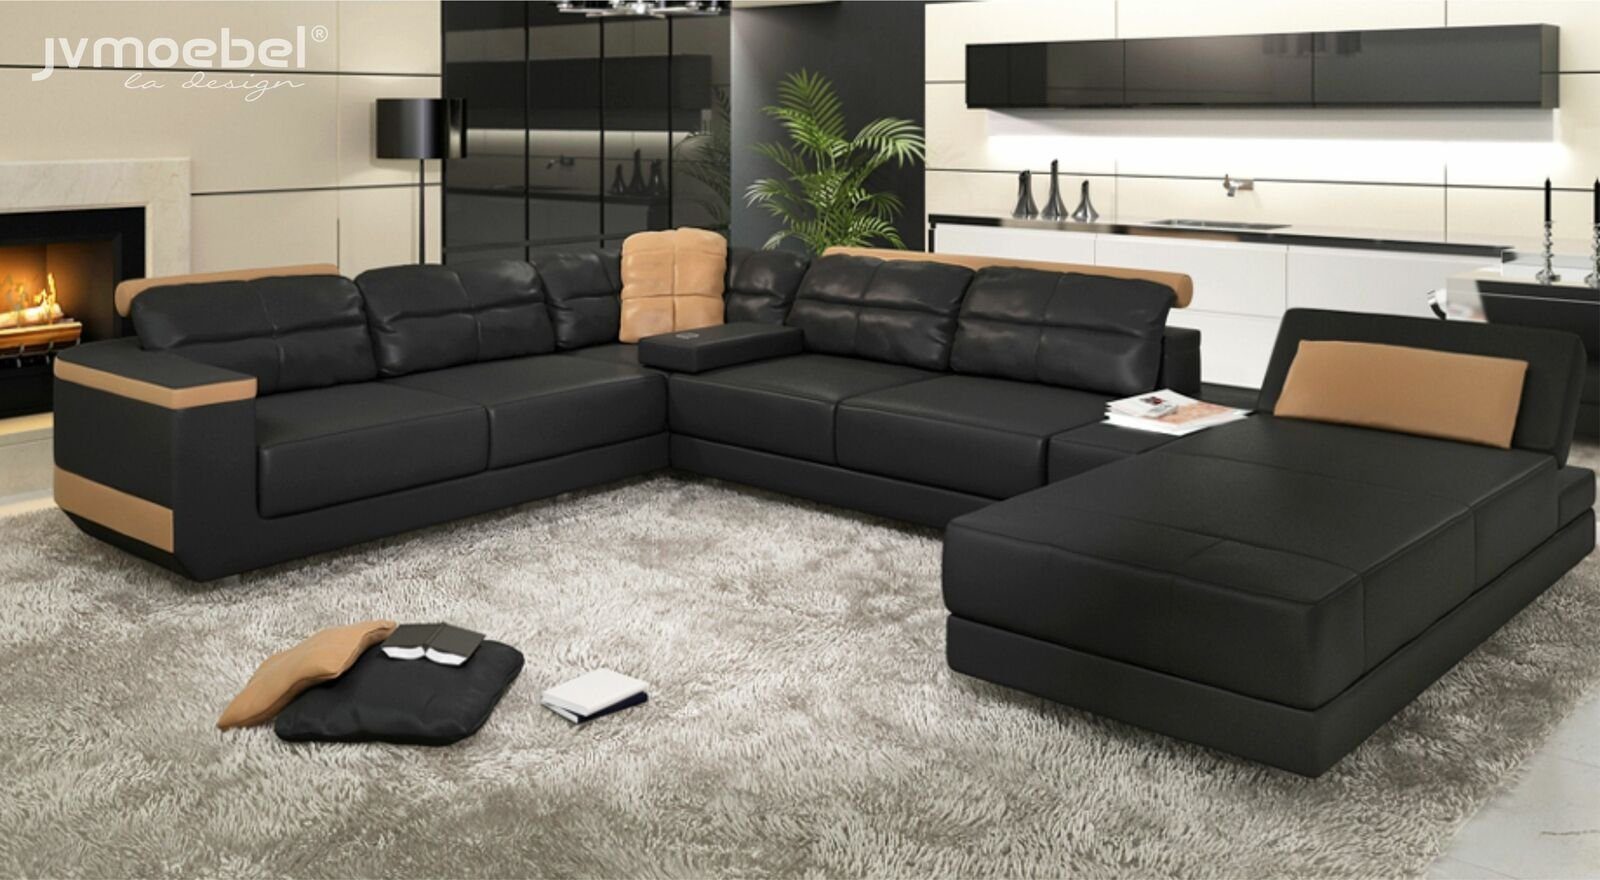 Polster Ecksofa, JVmoebel Stoff Design Ecksofa Modern Schwarz/Beige Sofas Couch Wohnlandschaft U-Form